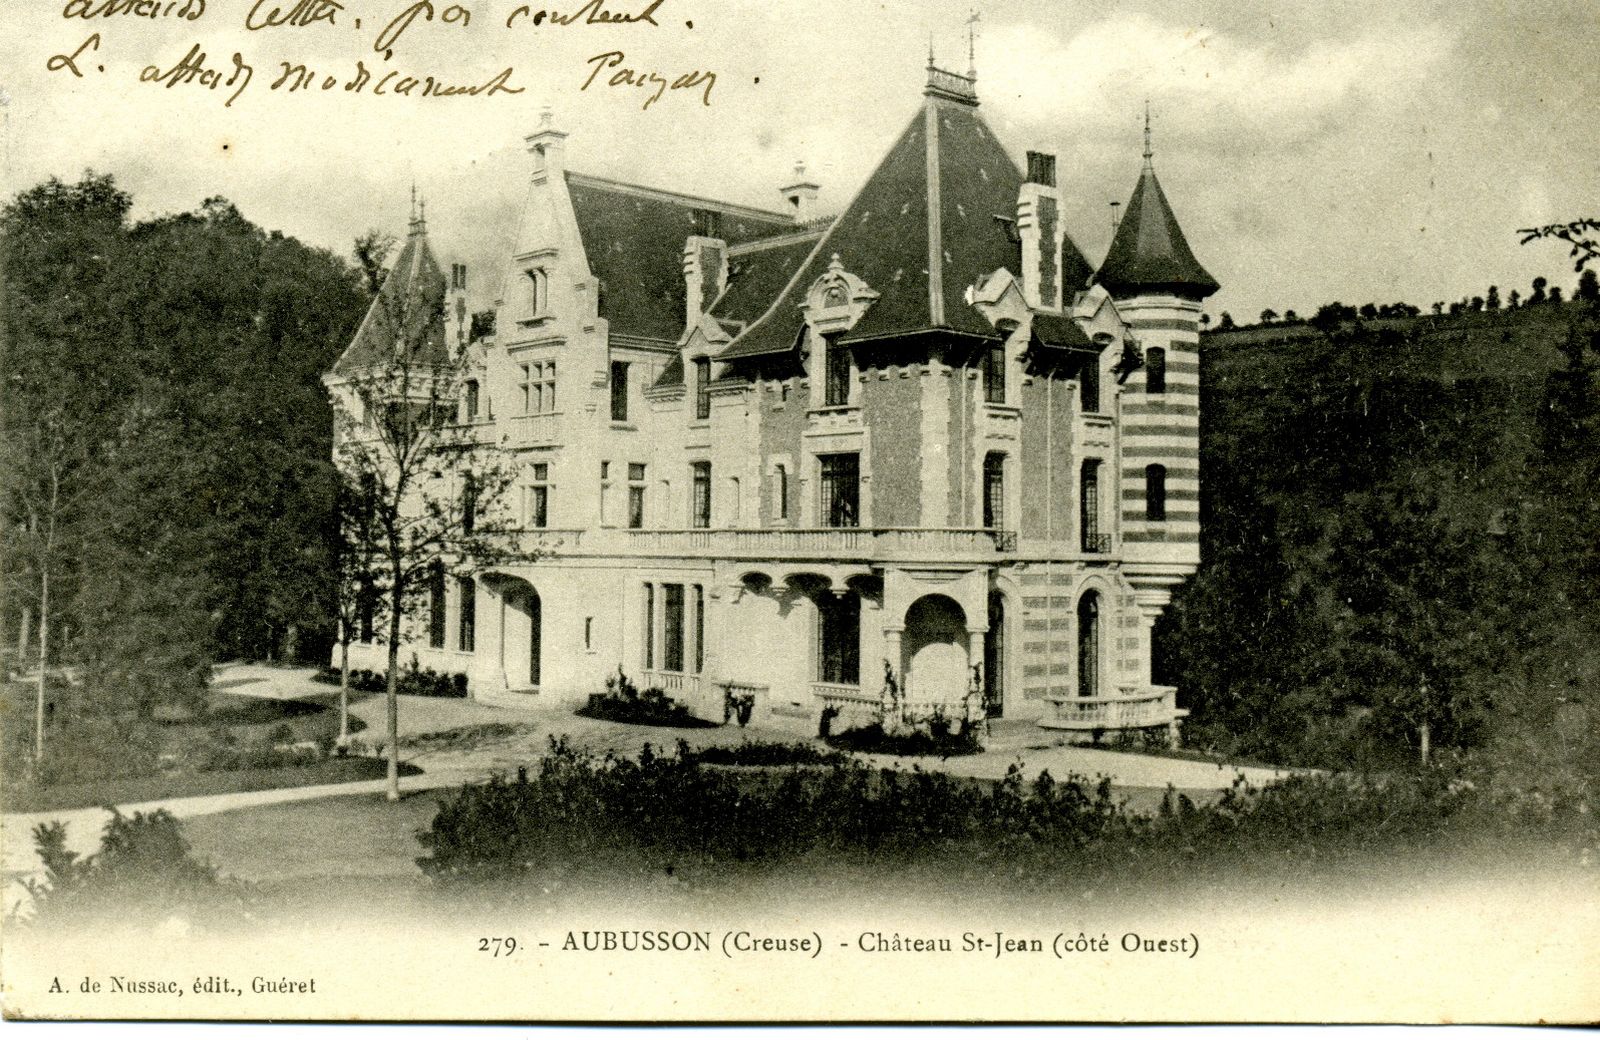 Carte postale (début du 20e siècle), représentant le château Saint-Jean. La nouvelle aile construite au sud dans les années 1960 n'y apparaît pas (AC Aubusson). 